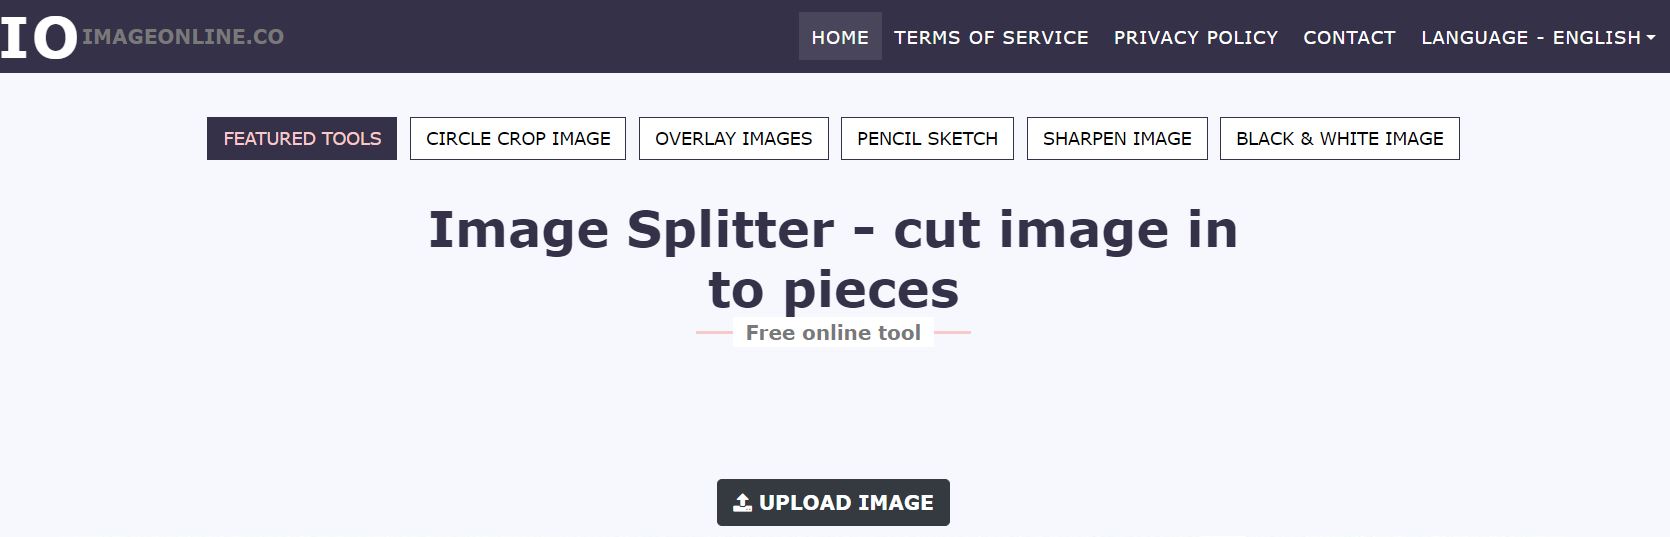 ImageOnline’s Image Splitter